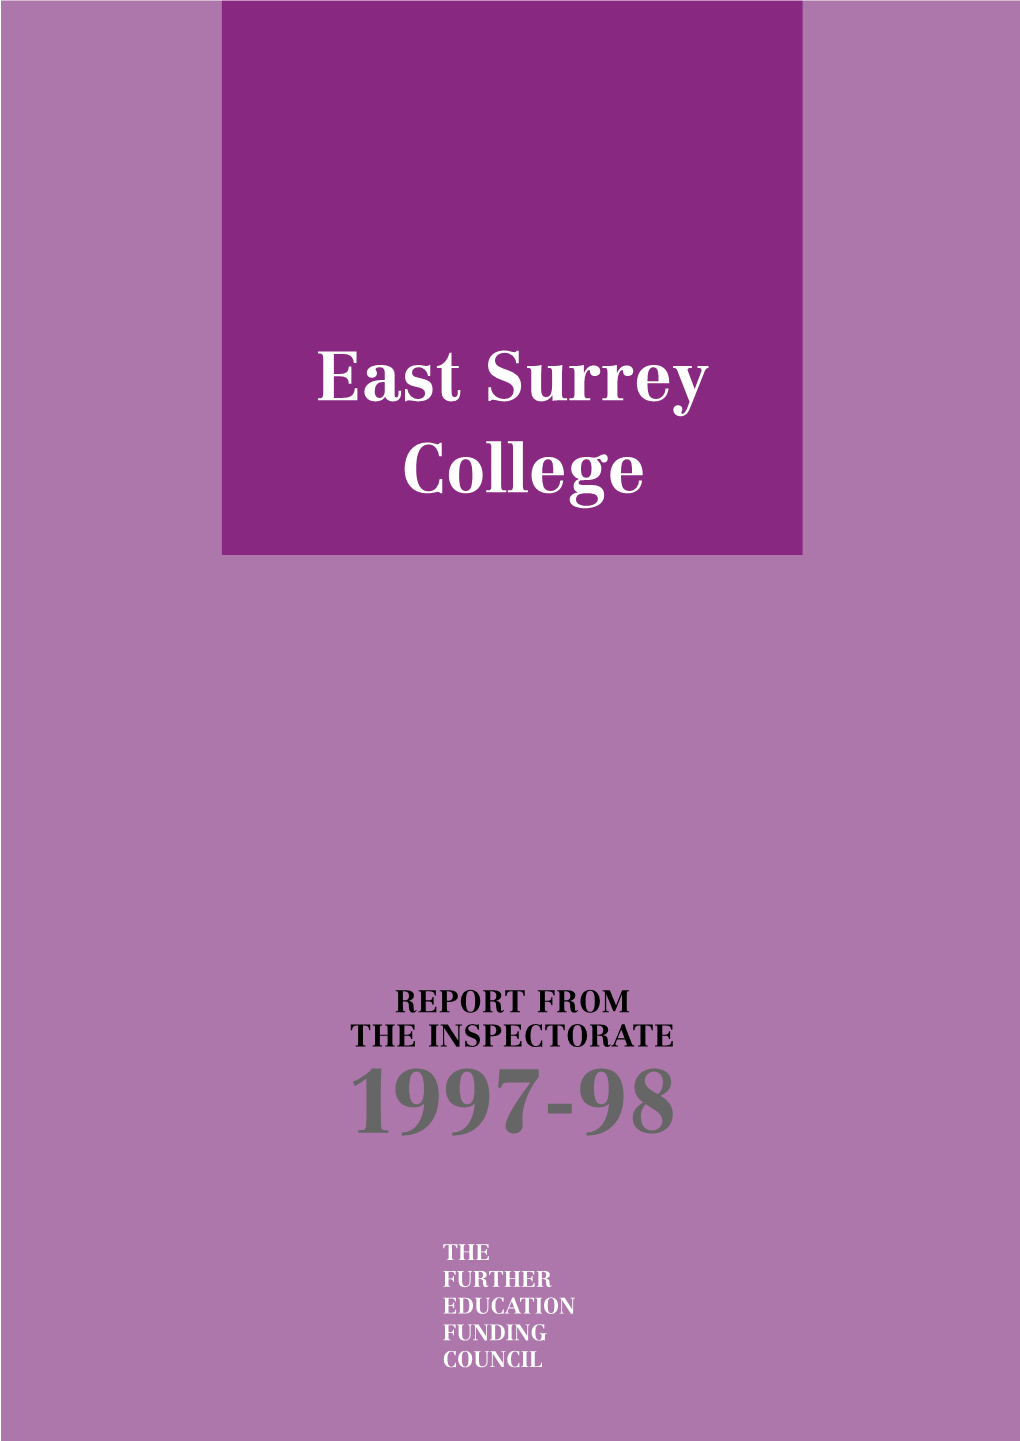 East Surrey College